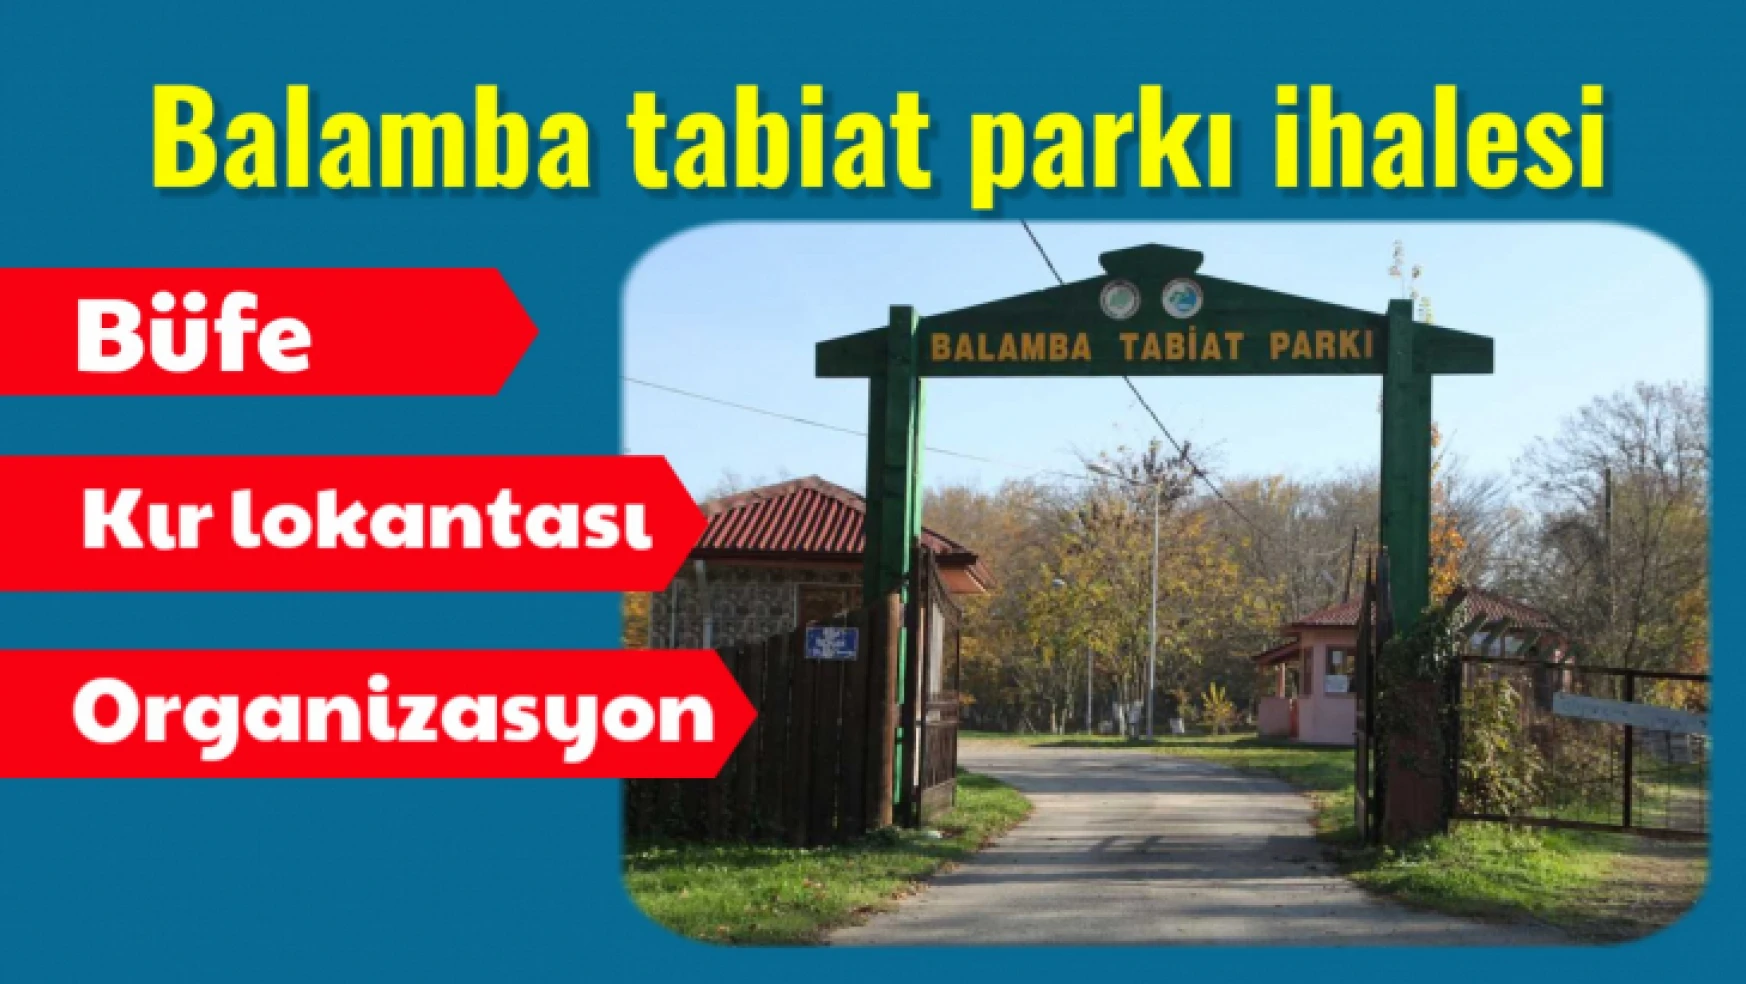 Balamba tabiat parkının ihalesi var